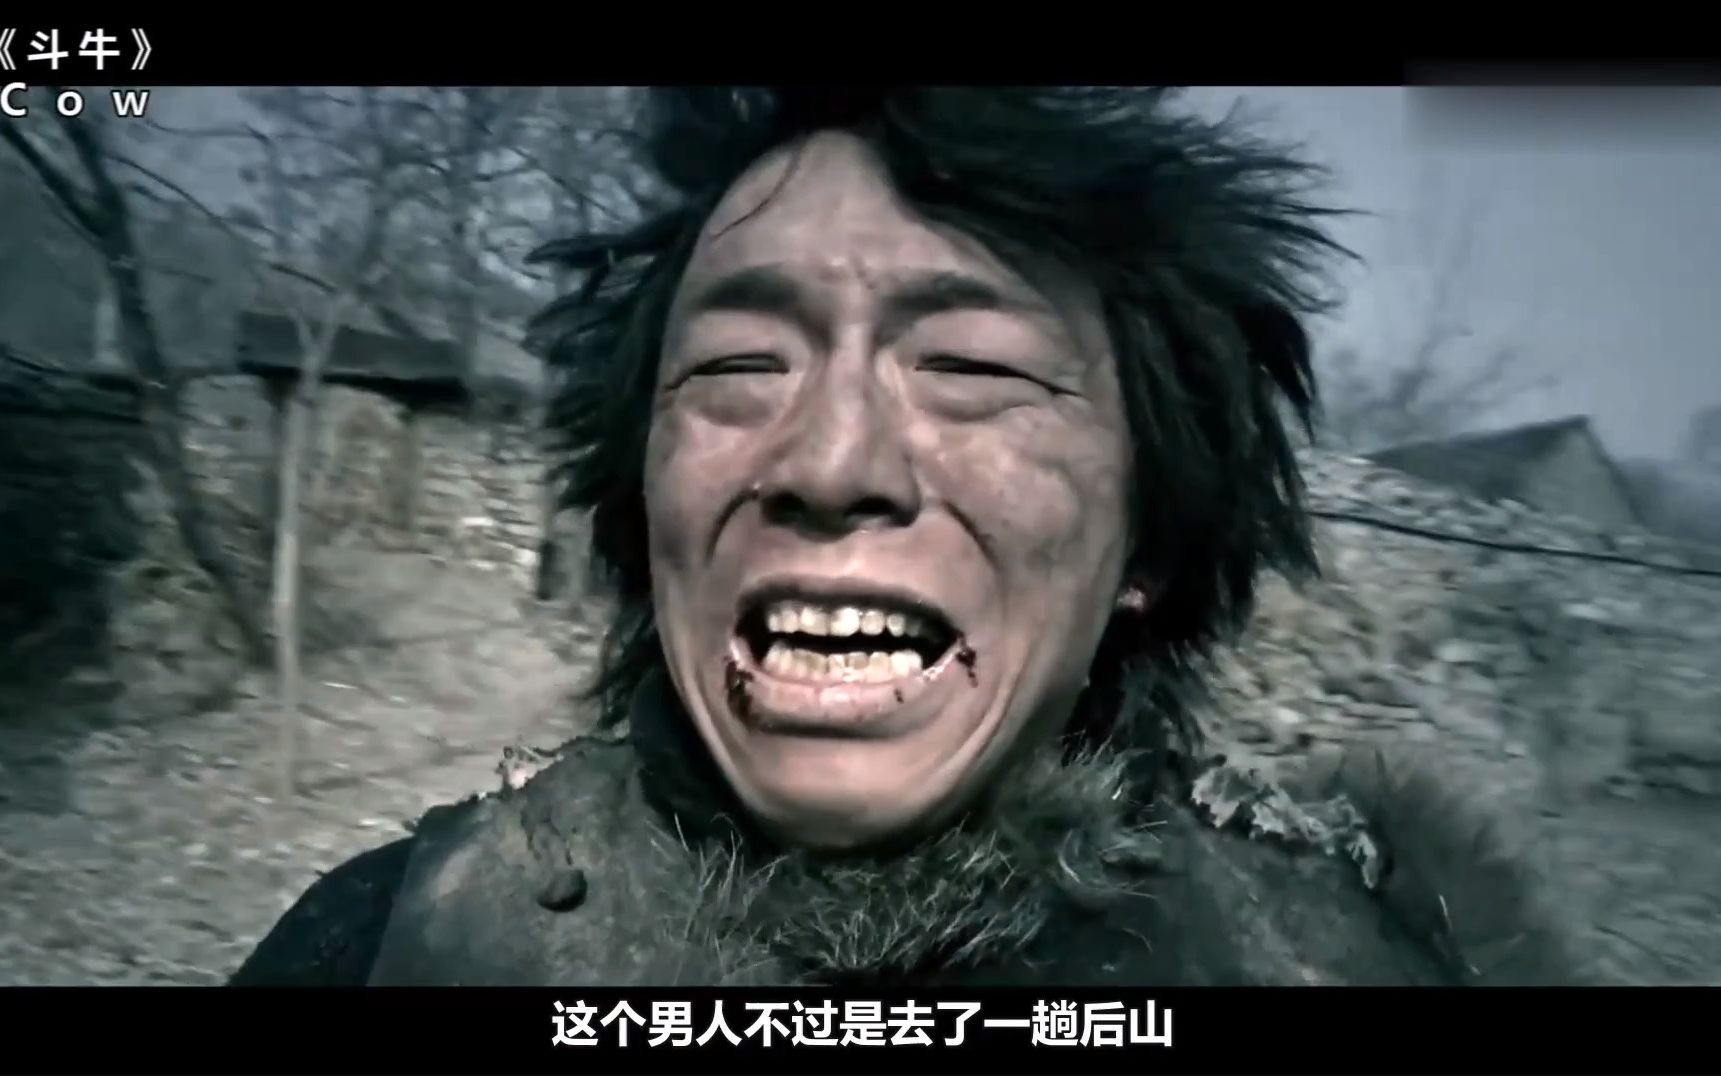 要不是因为黄渤这个表情包,我真不知道中国还有这么牛的电影!